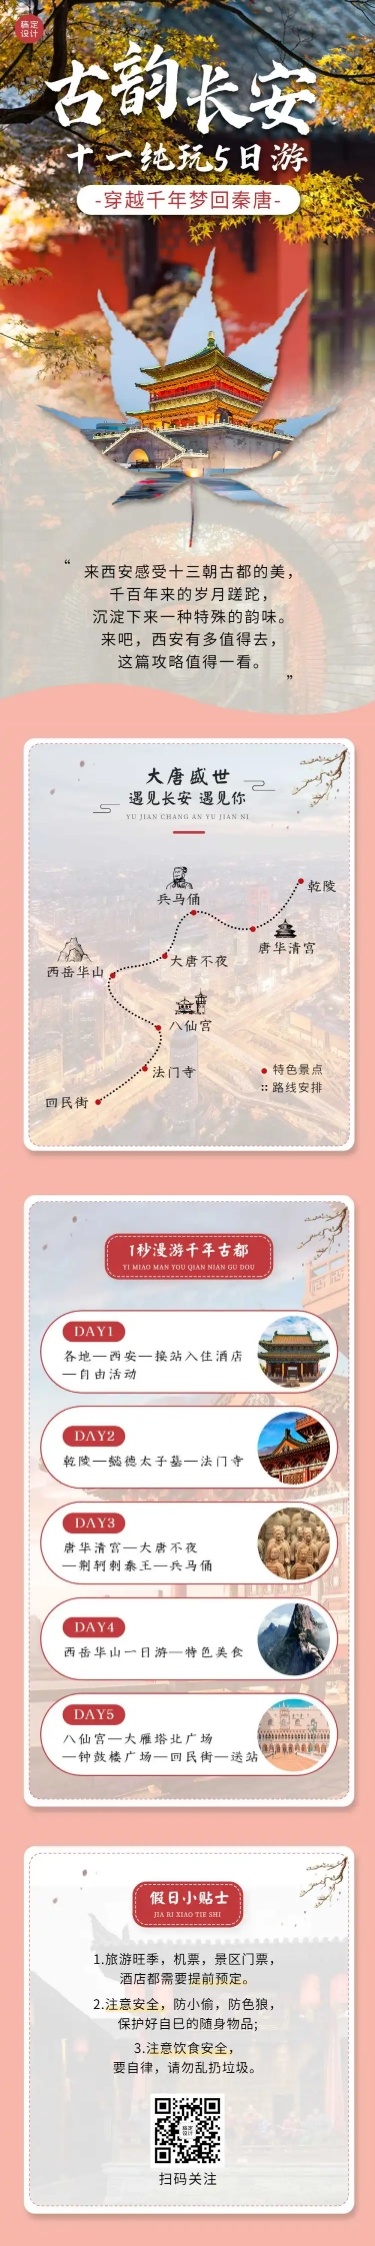 国庆十一旅游路线攻略中国风长图